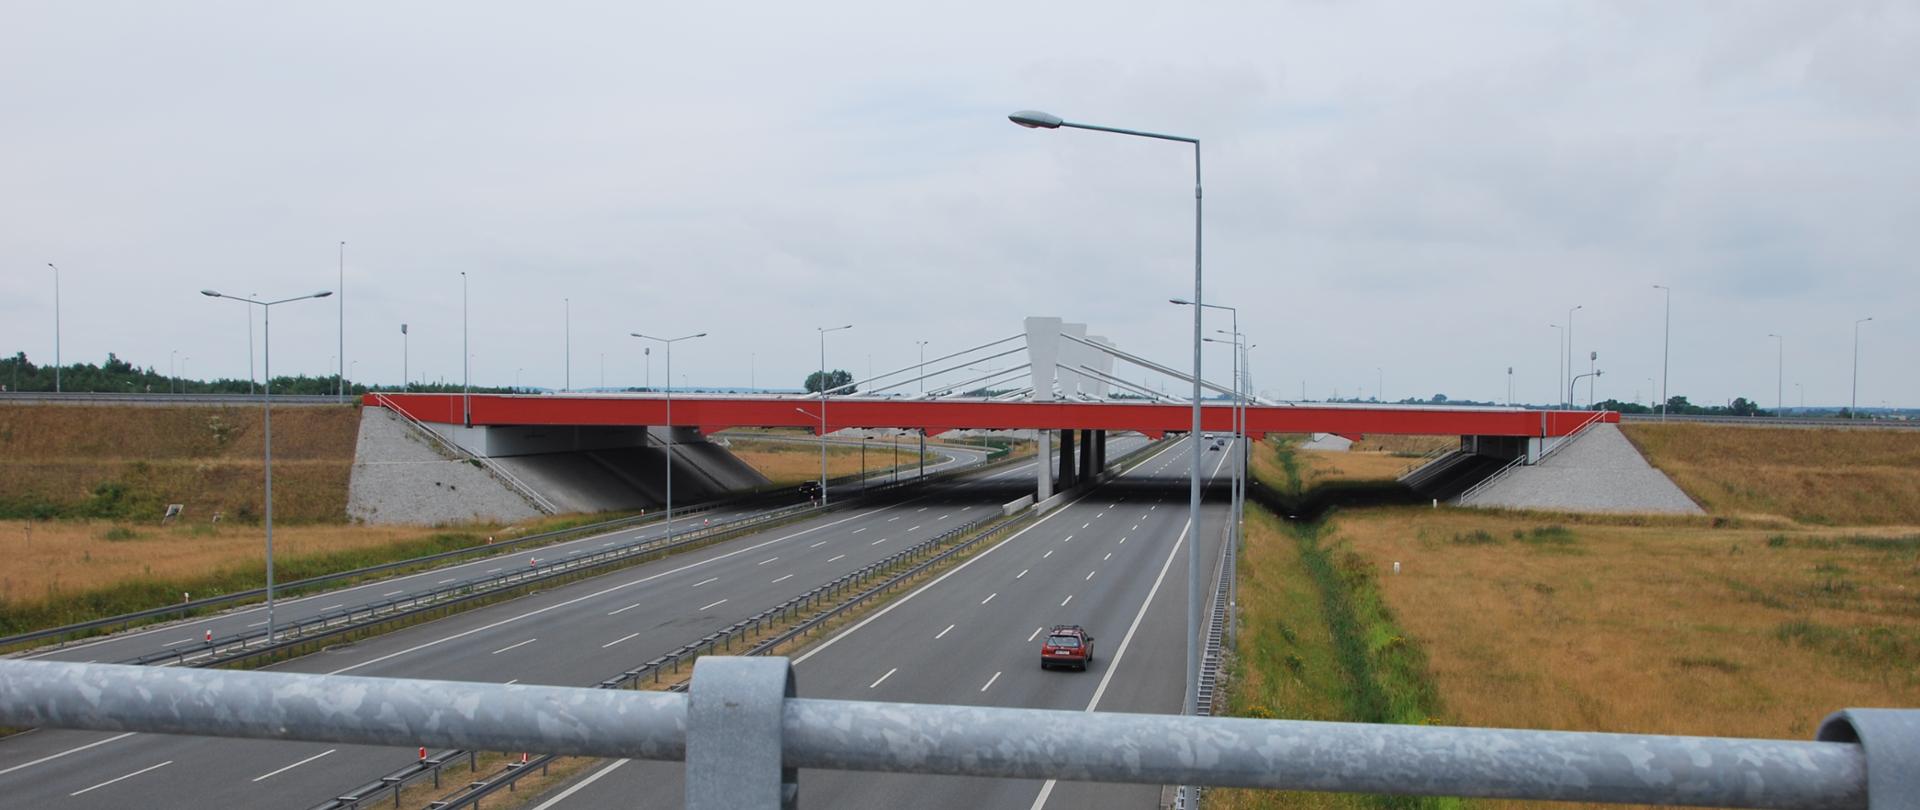 Widok z wiaduktu na obie trzypasowe jezdnie autostrady A2, w tle widoczne wiadukty autostrady A1 z białymi pylonami i naciągami, biegnące górą. Ruch na drodze niewielki.